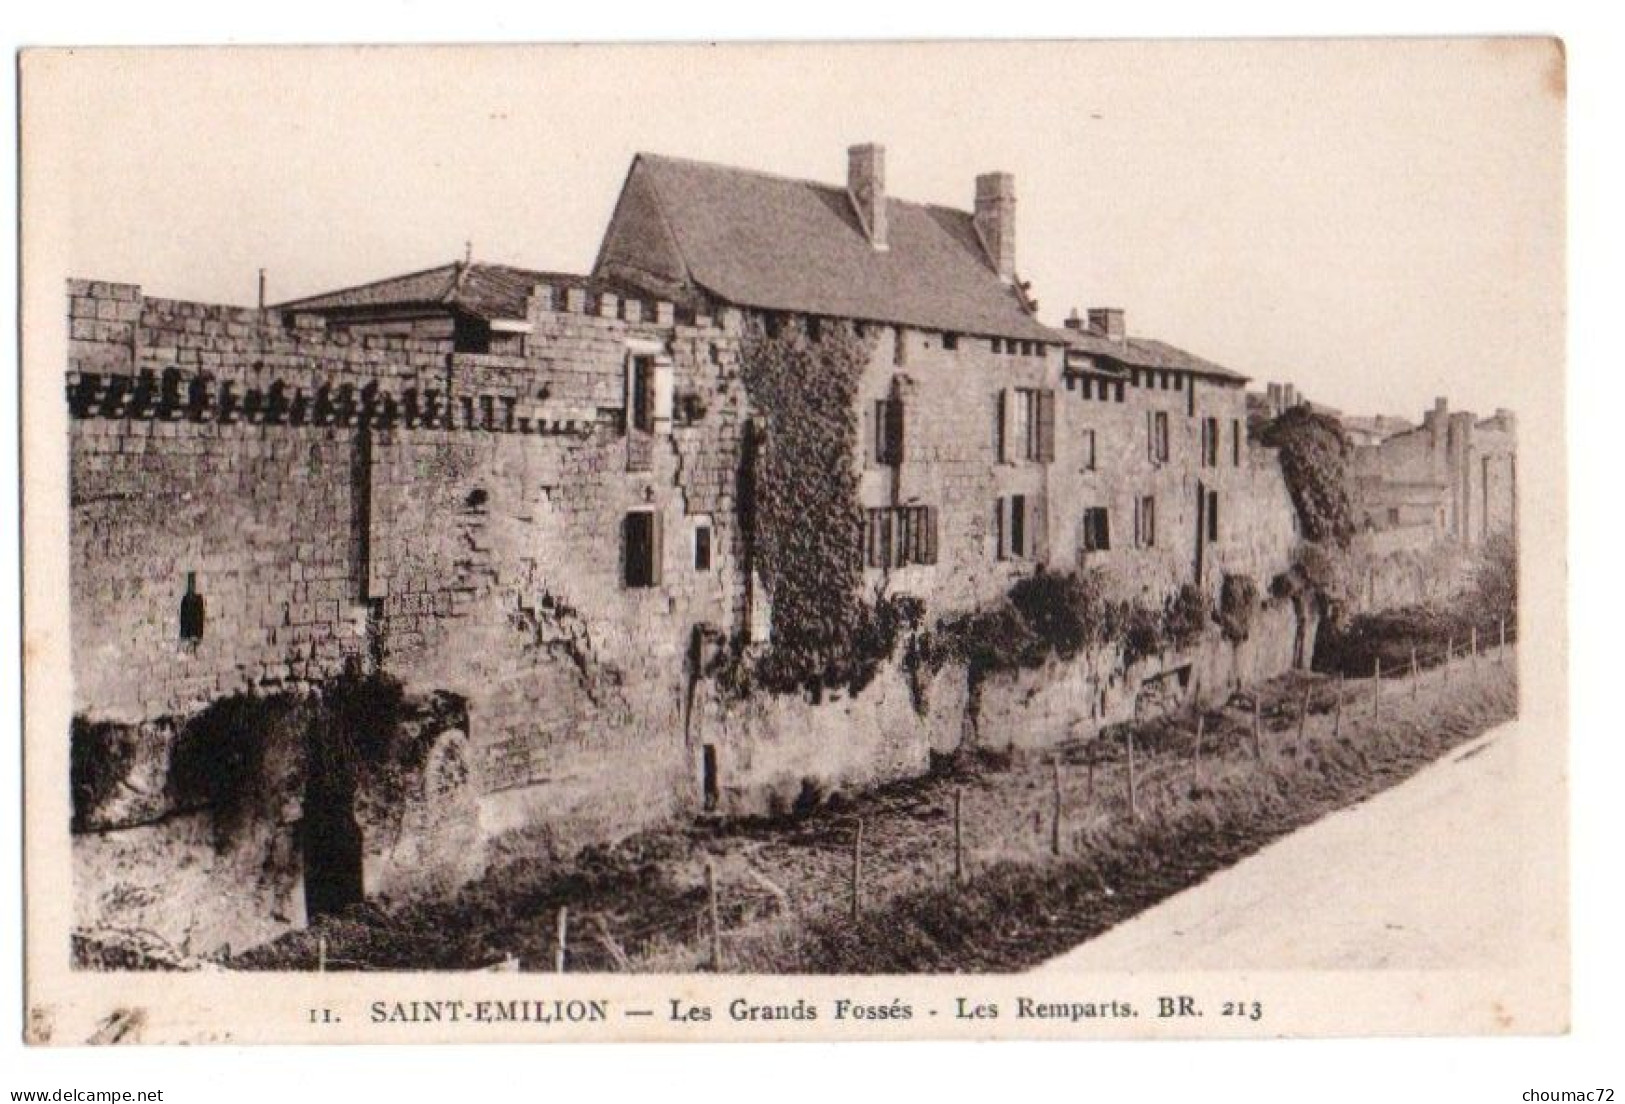 (33) 656, Saint St Emilion, BR 213, Les Grands Fossés, Les Remparts - Saint-Emilion